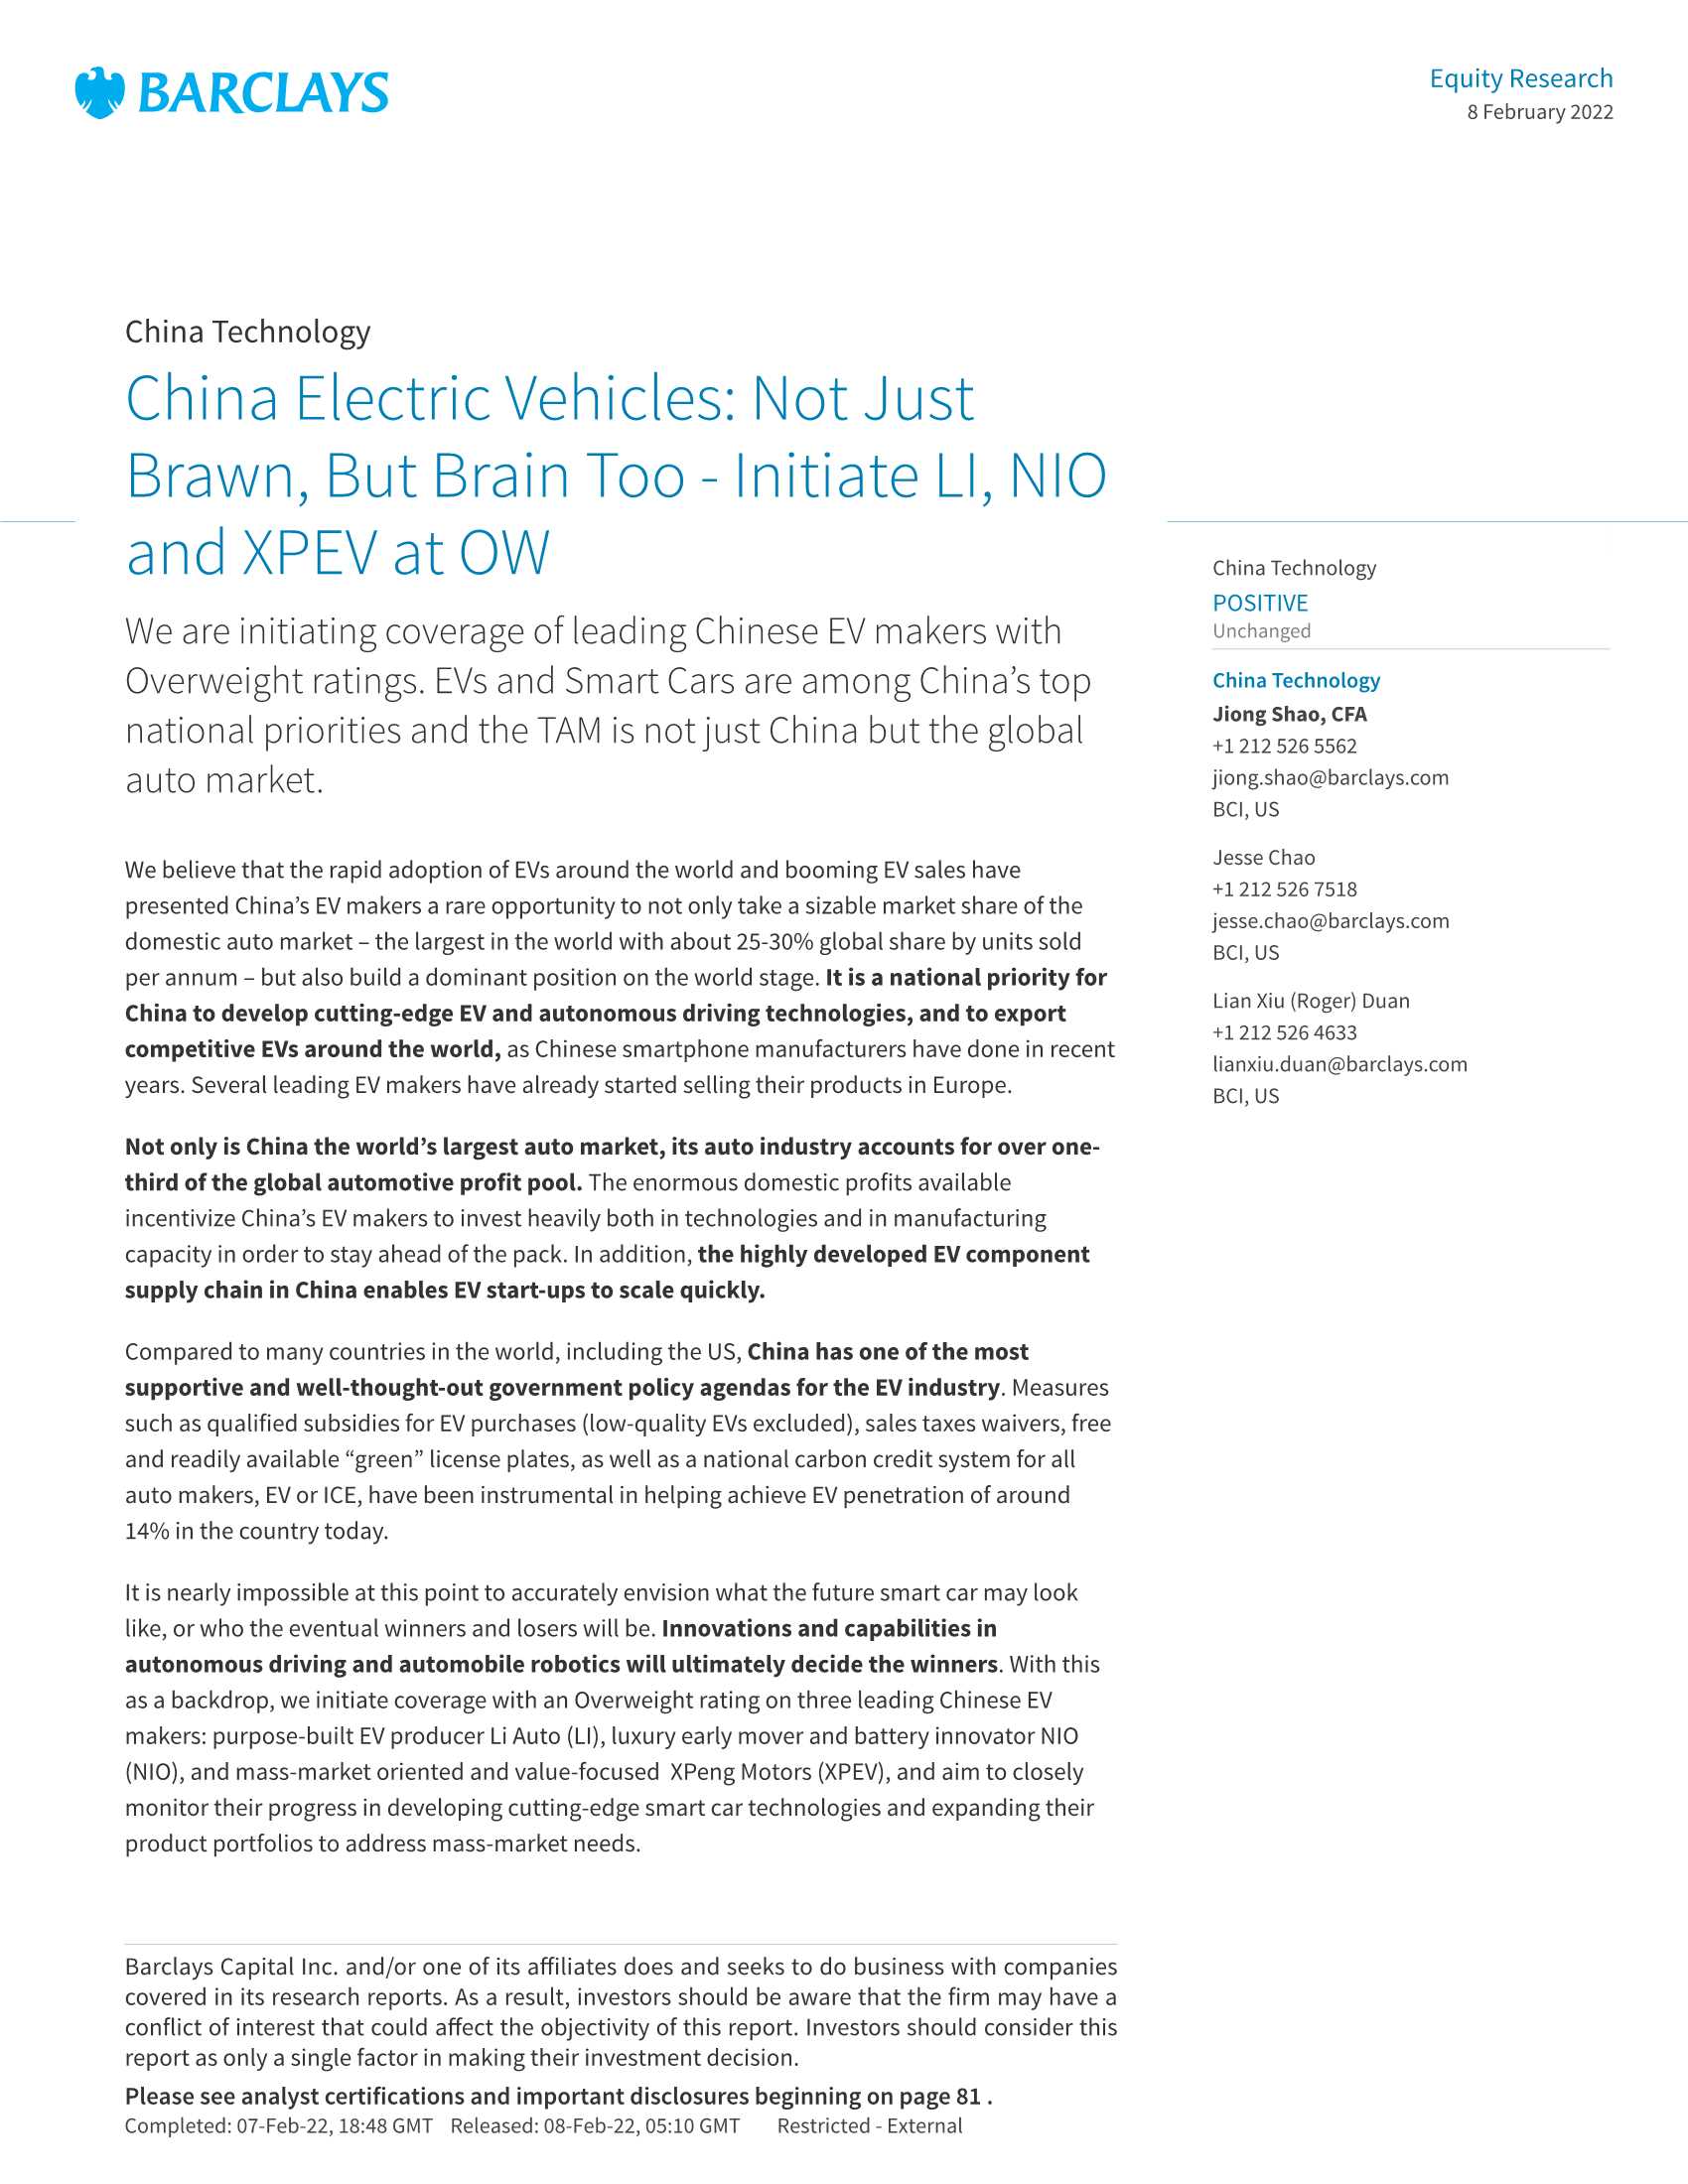 巴克莱-中国电动汽车行业报告（英）-2022.02-90页